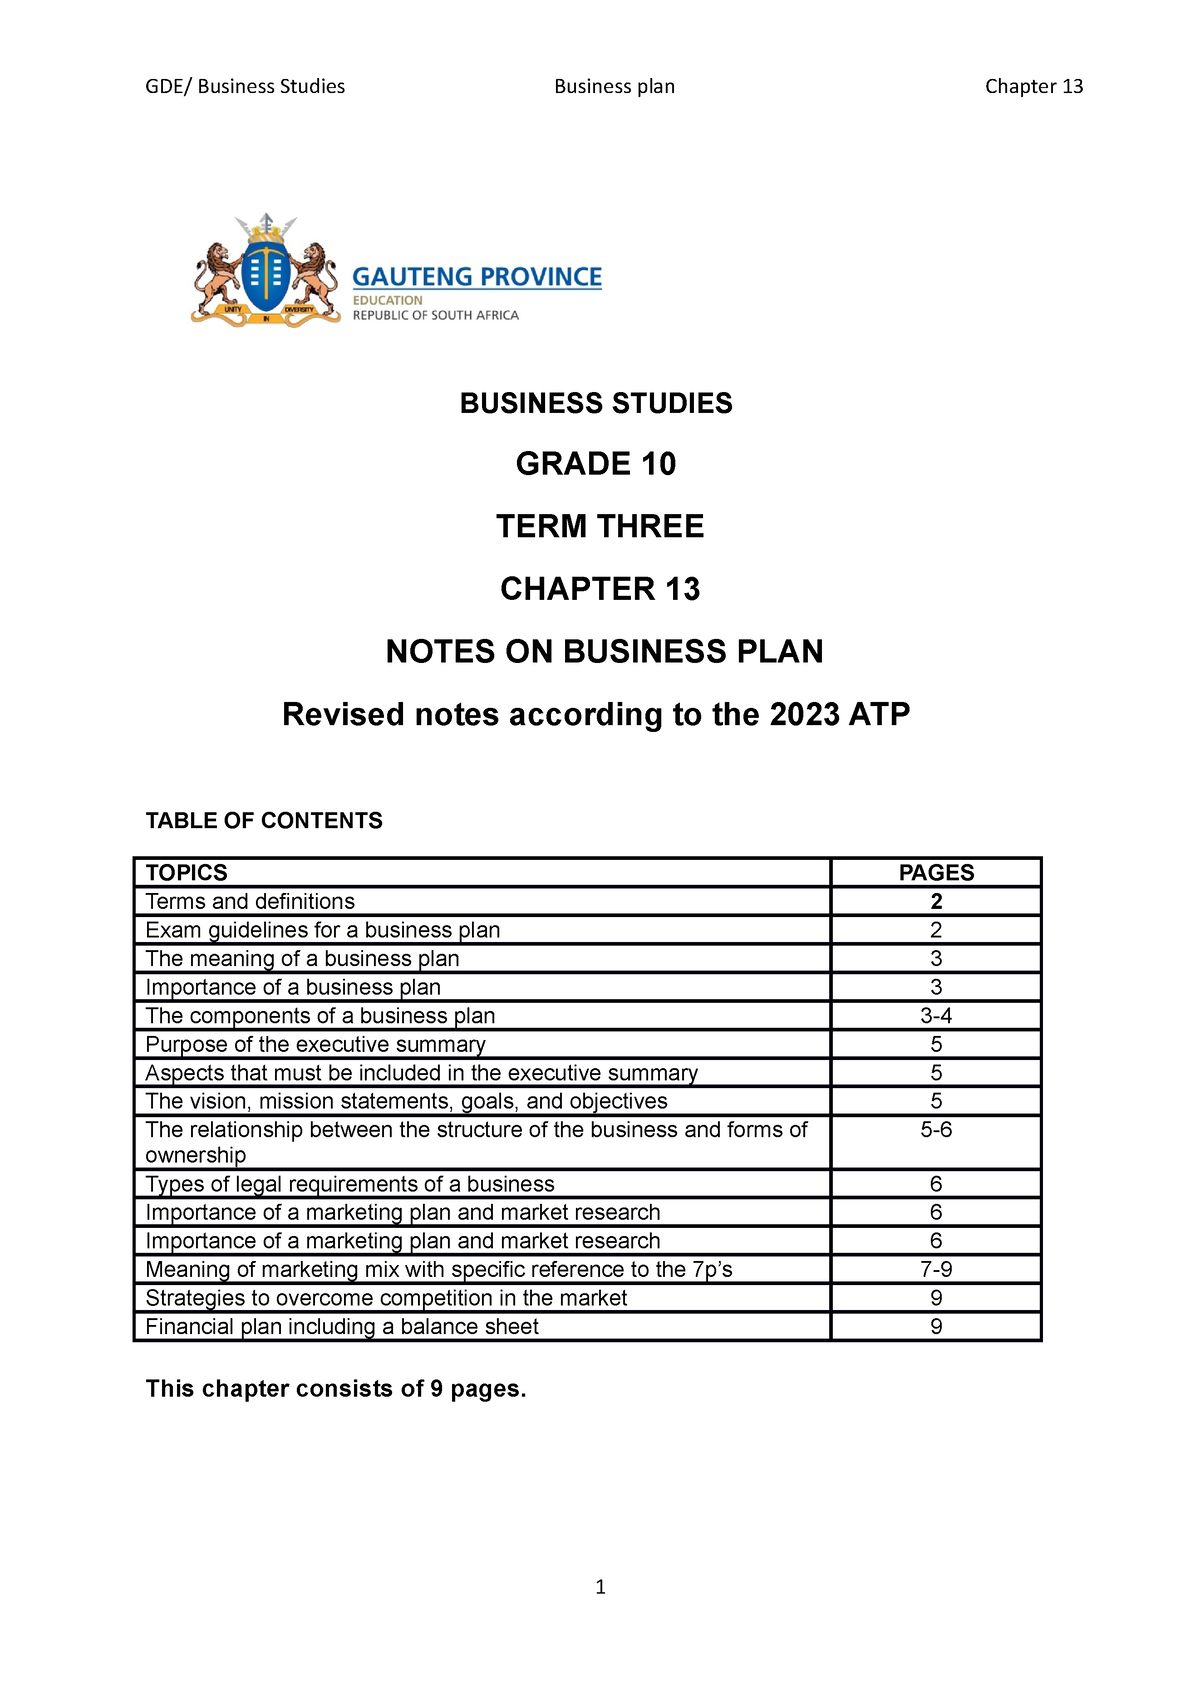 business plan grade 10 assignment